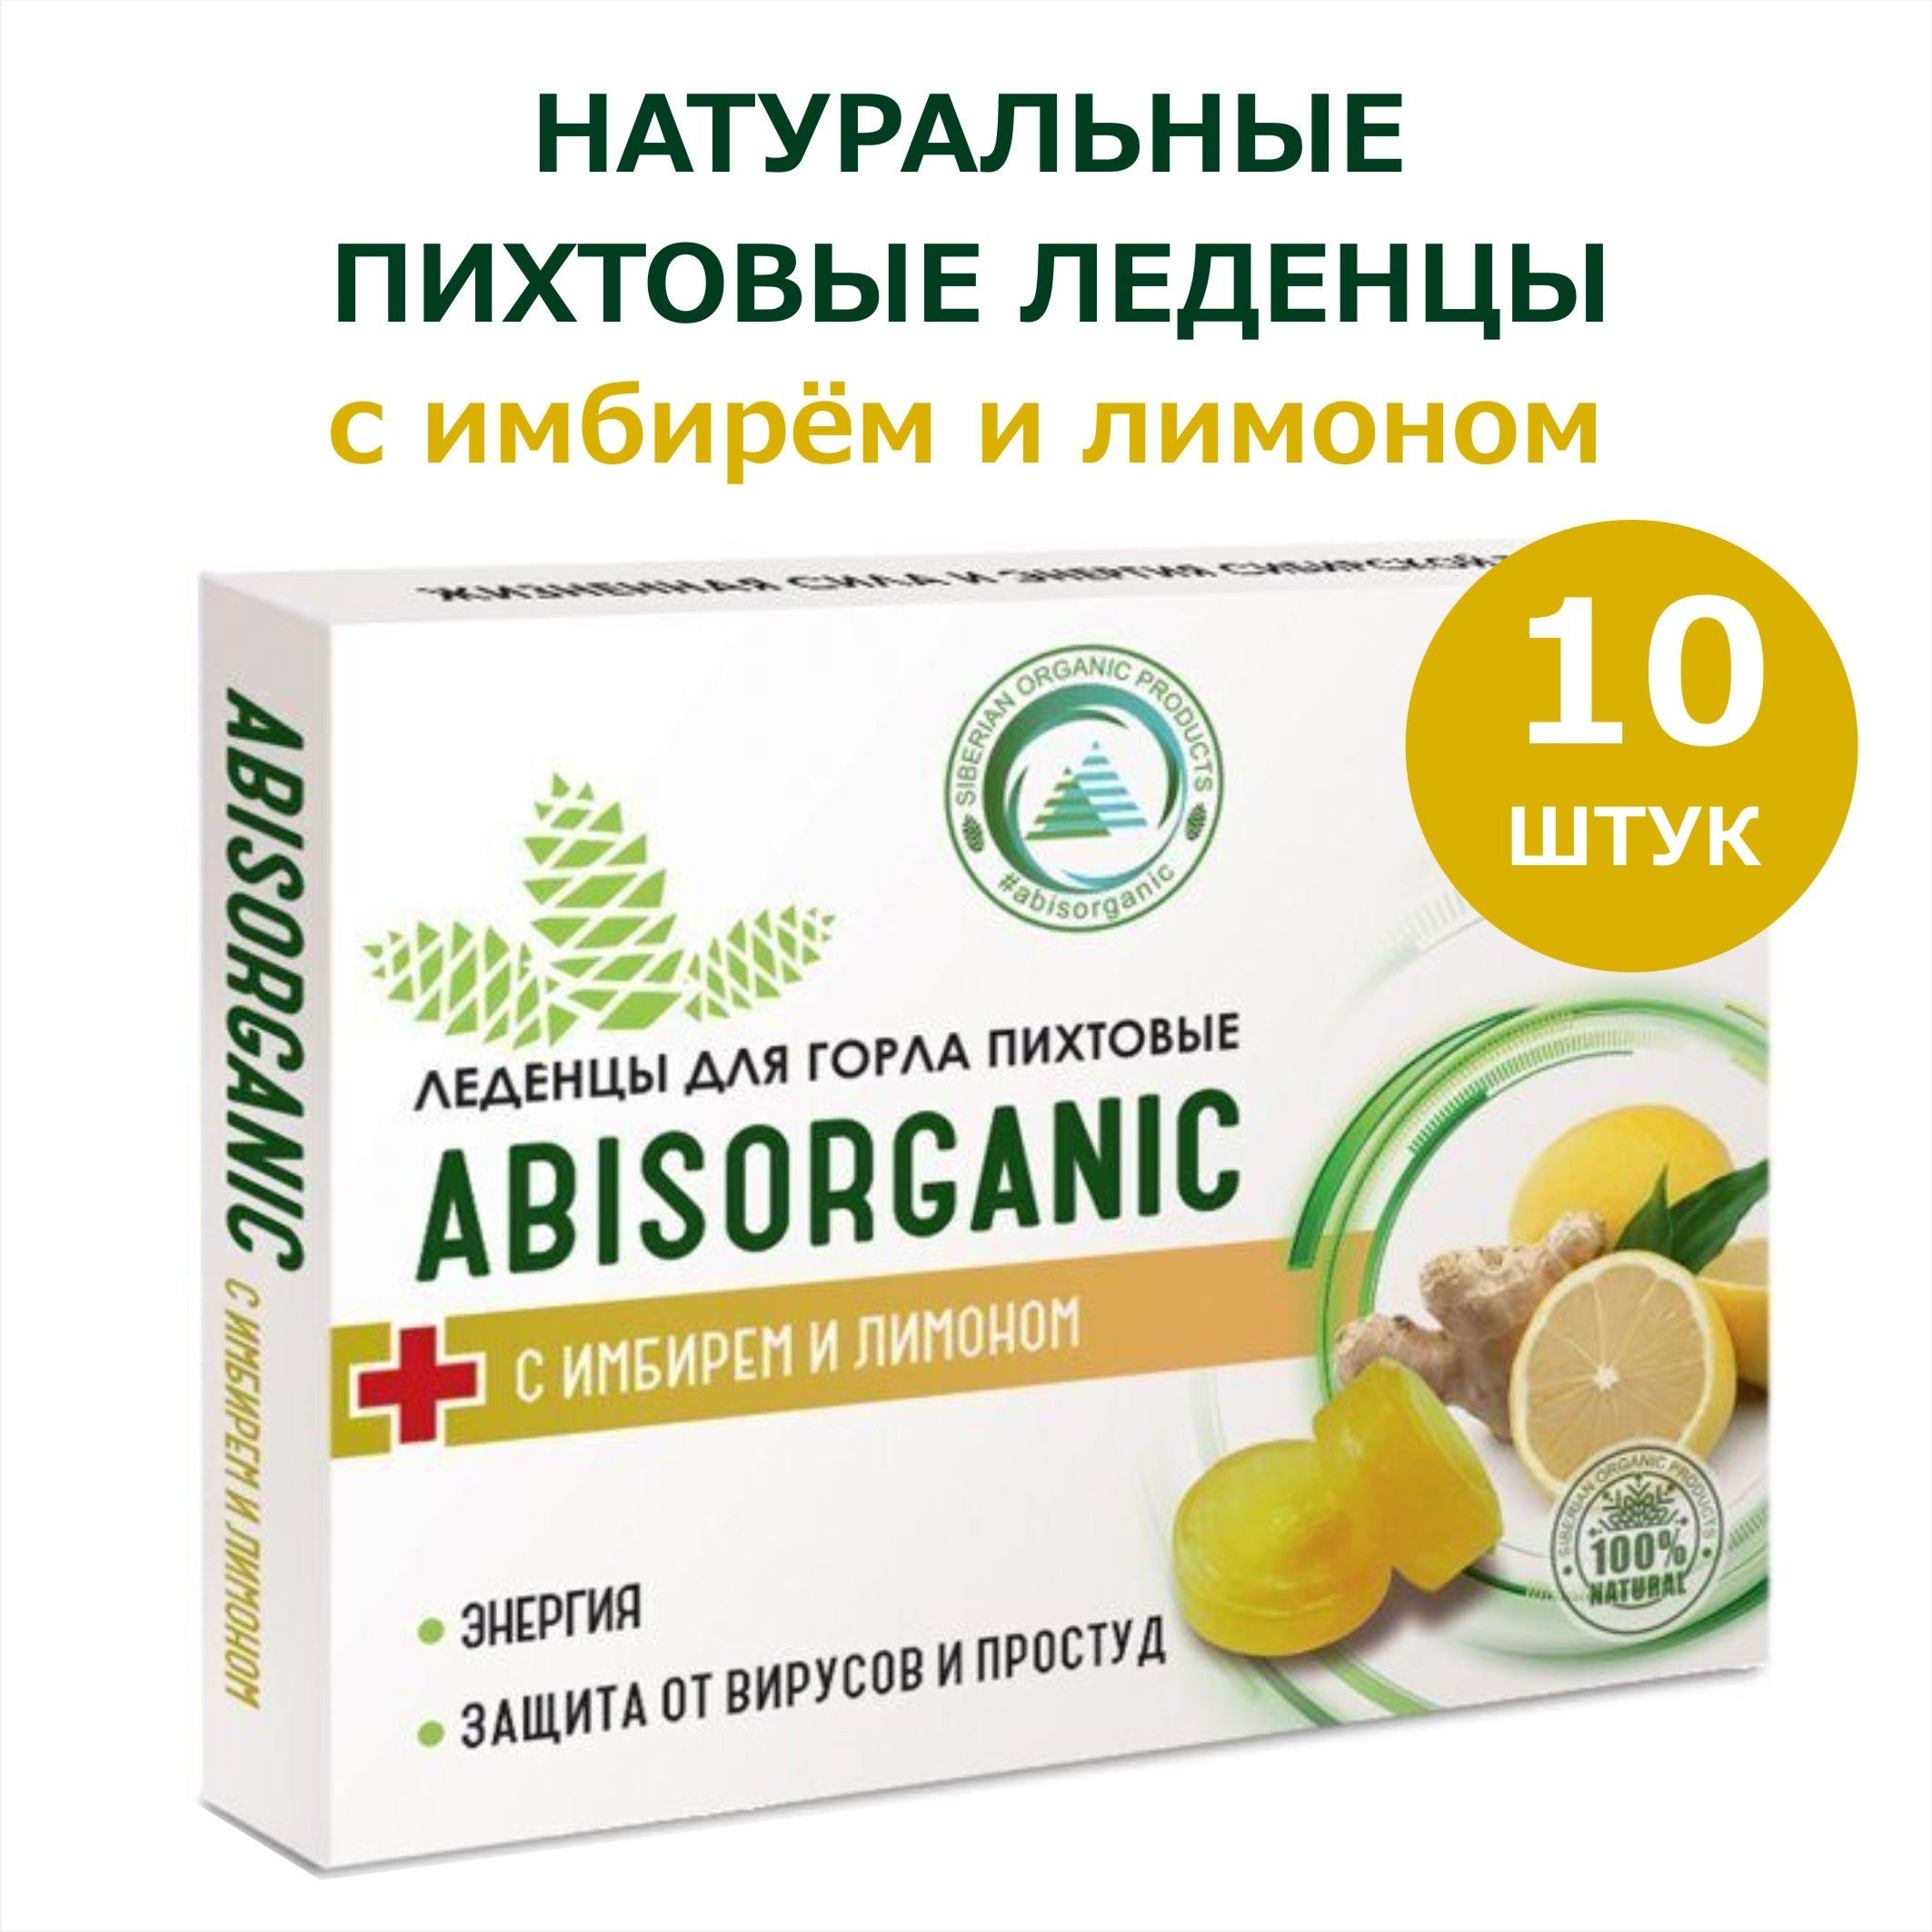 Купить Леденцы ABISORGANIC пихтовые, с имбирем и лимоном, в блистере, 10шт